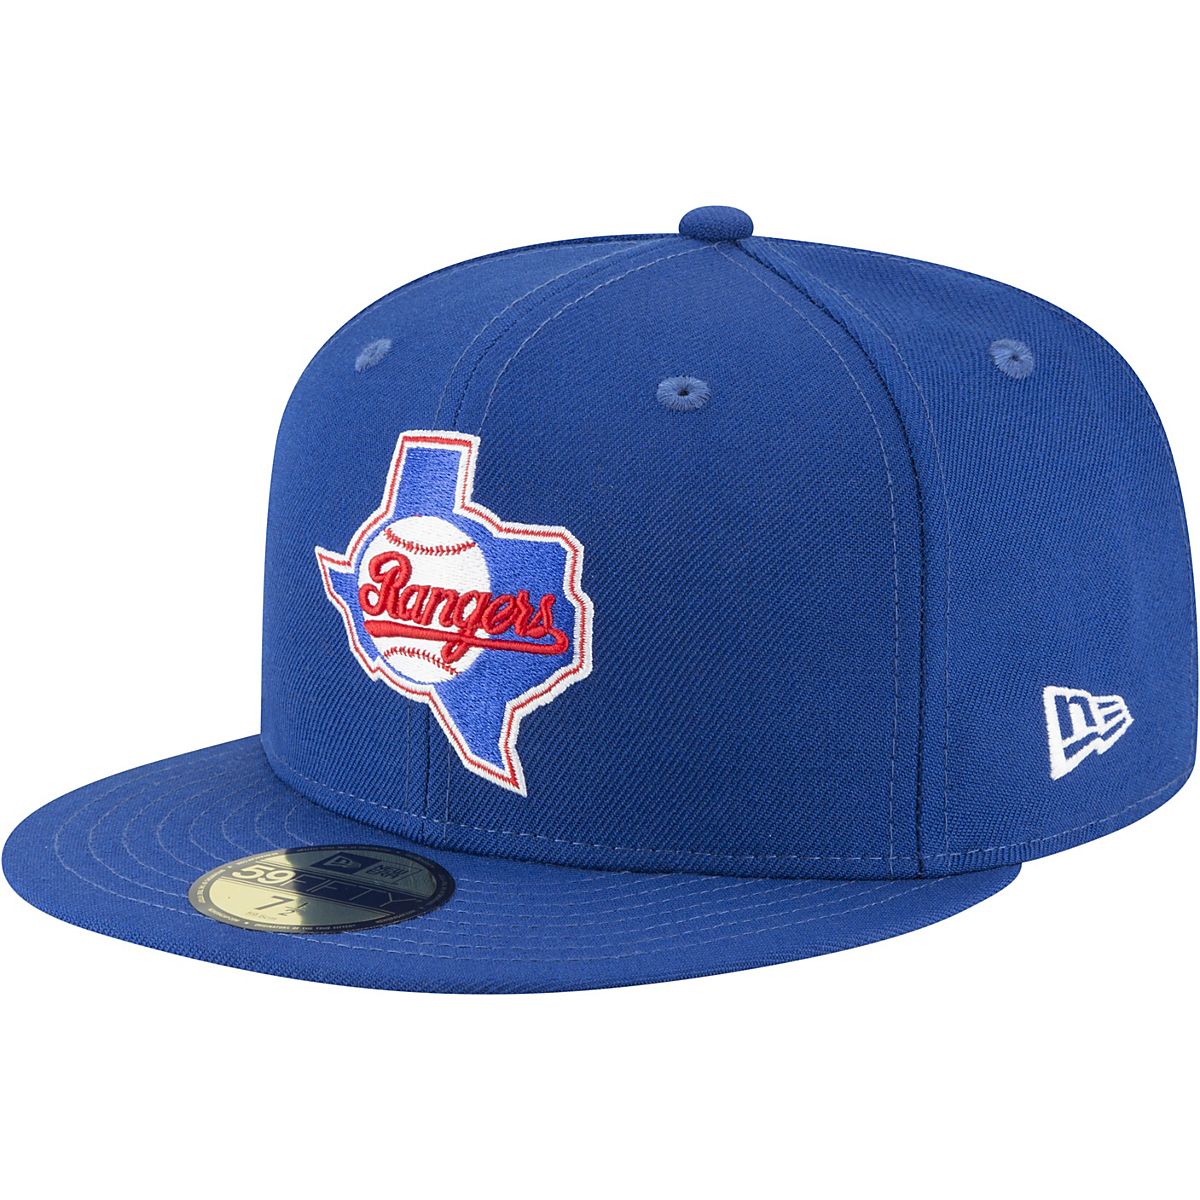 New Era Men's Texas Rangers 59FIFTY Cooperstown Cap Academy